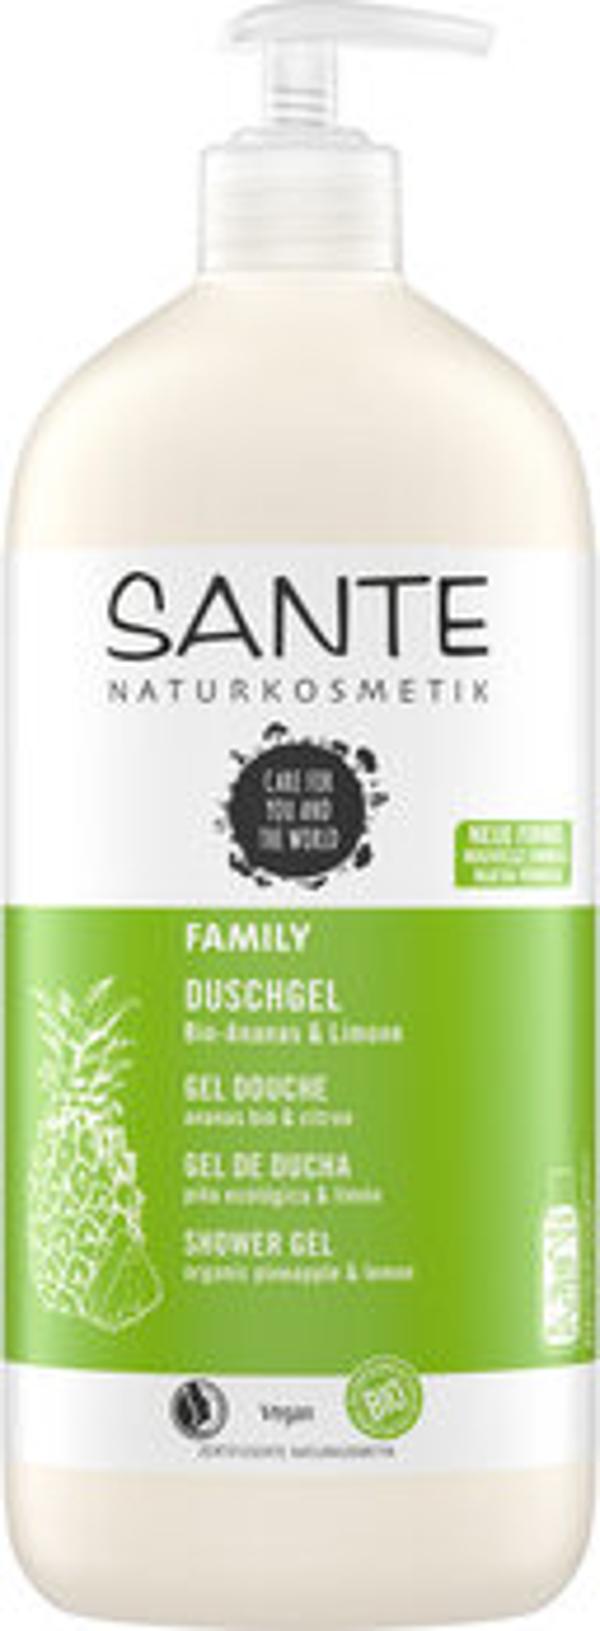 Produktfoto zu FAMILY Duschgel Ananas & Limone 950ml